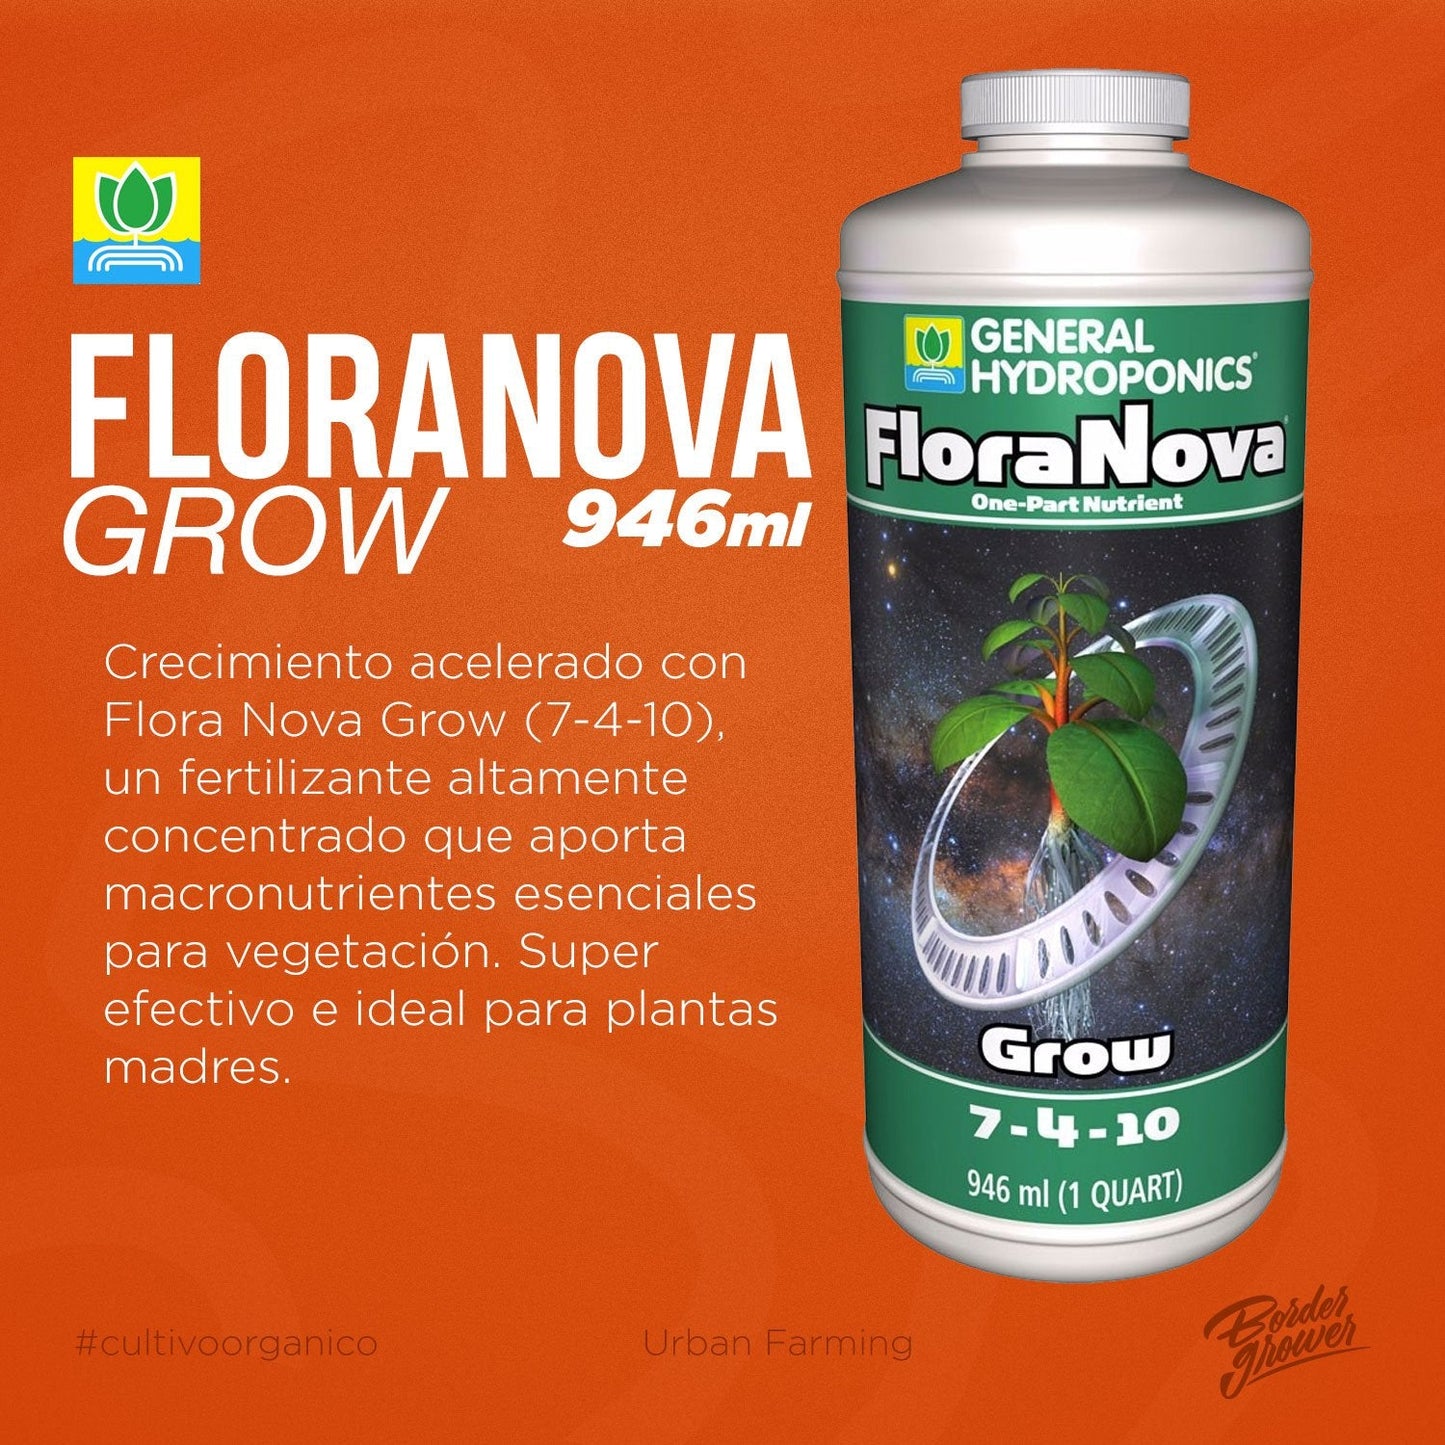 FLORANOVA GROW Fertilizante Base Para Vegetación Altamente Concentrado Mejora El Crecimiento De Tallos, Hojas Y Raíces